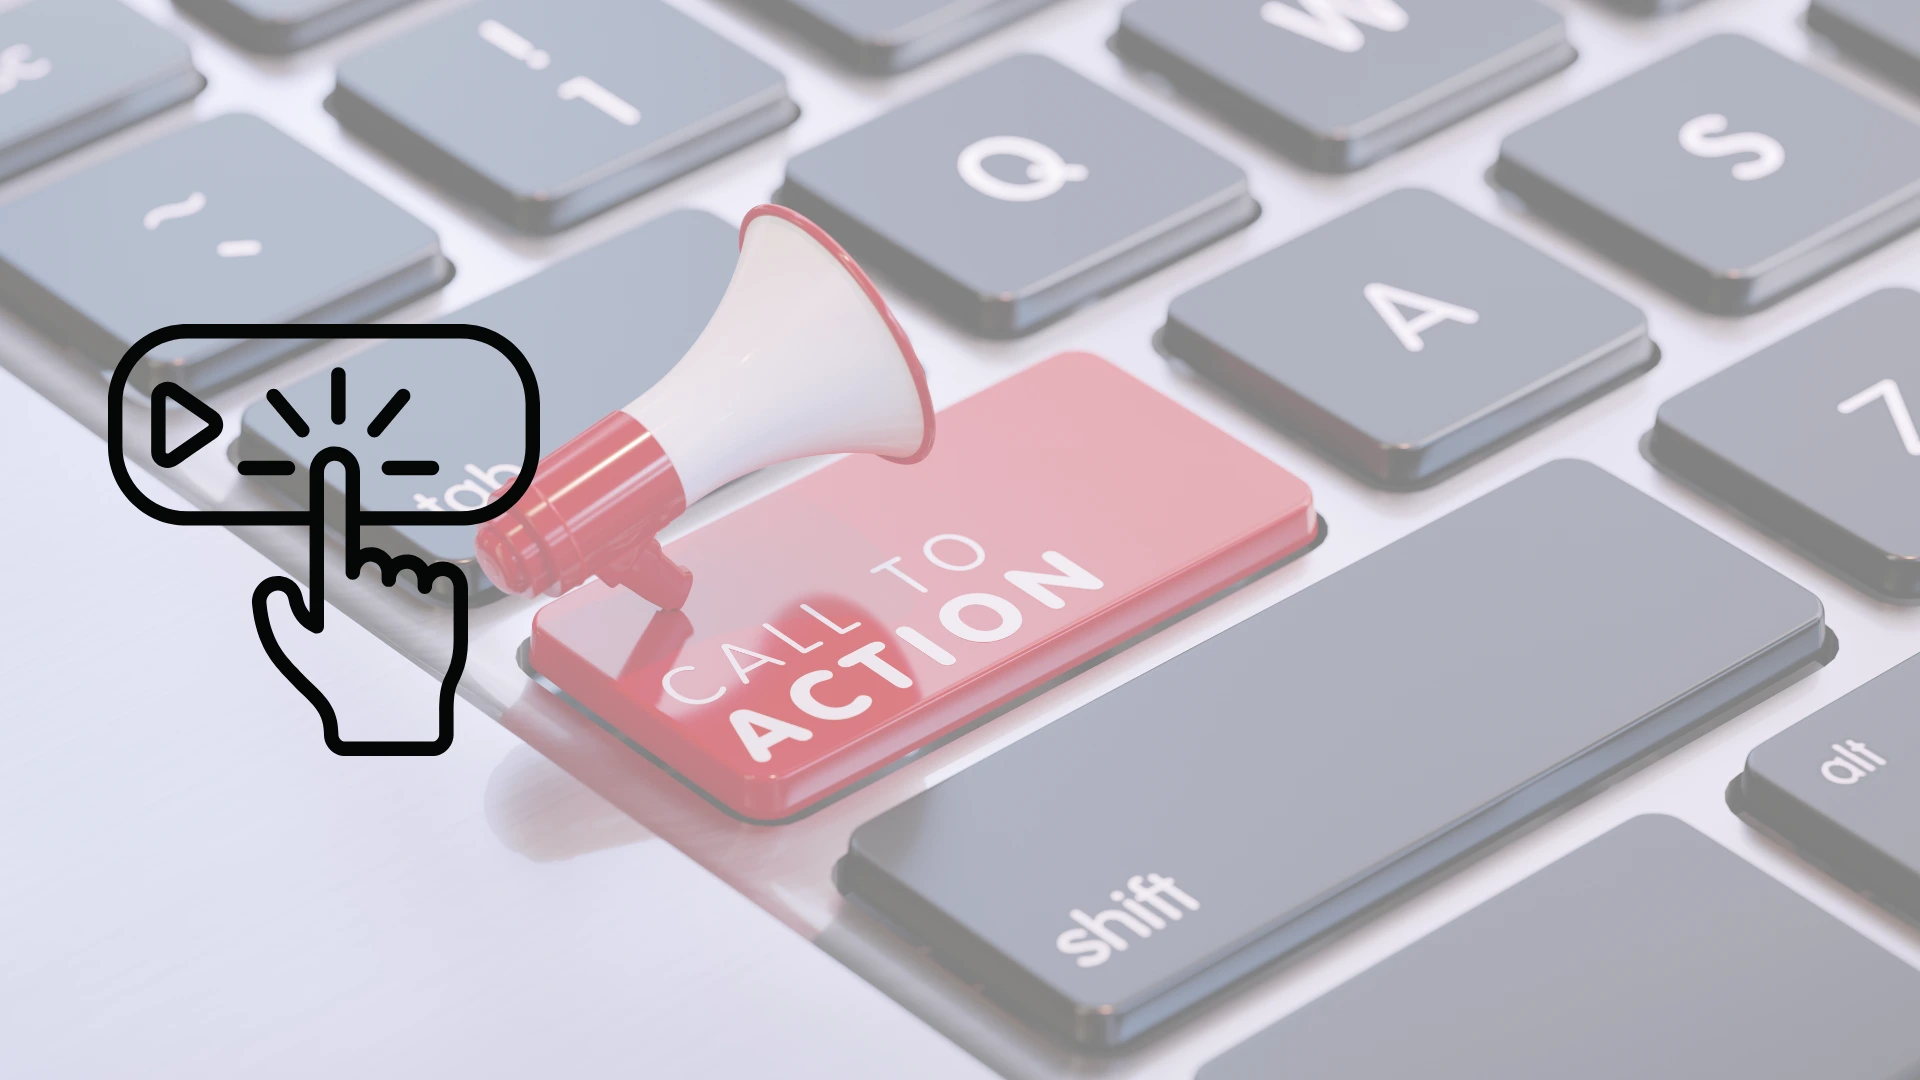 Teclado de laptop con un botón de "Call to action"